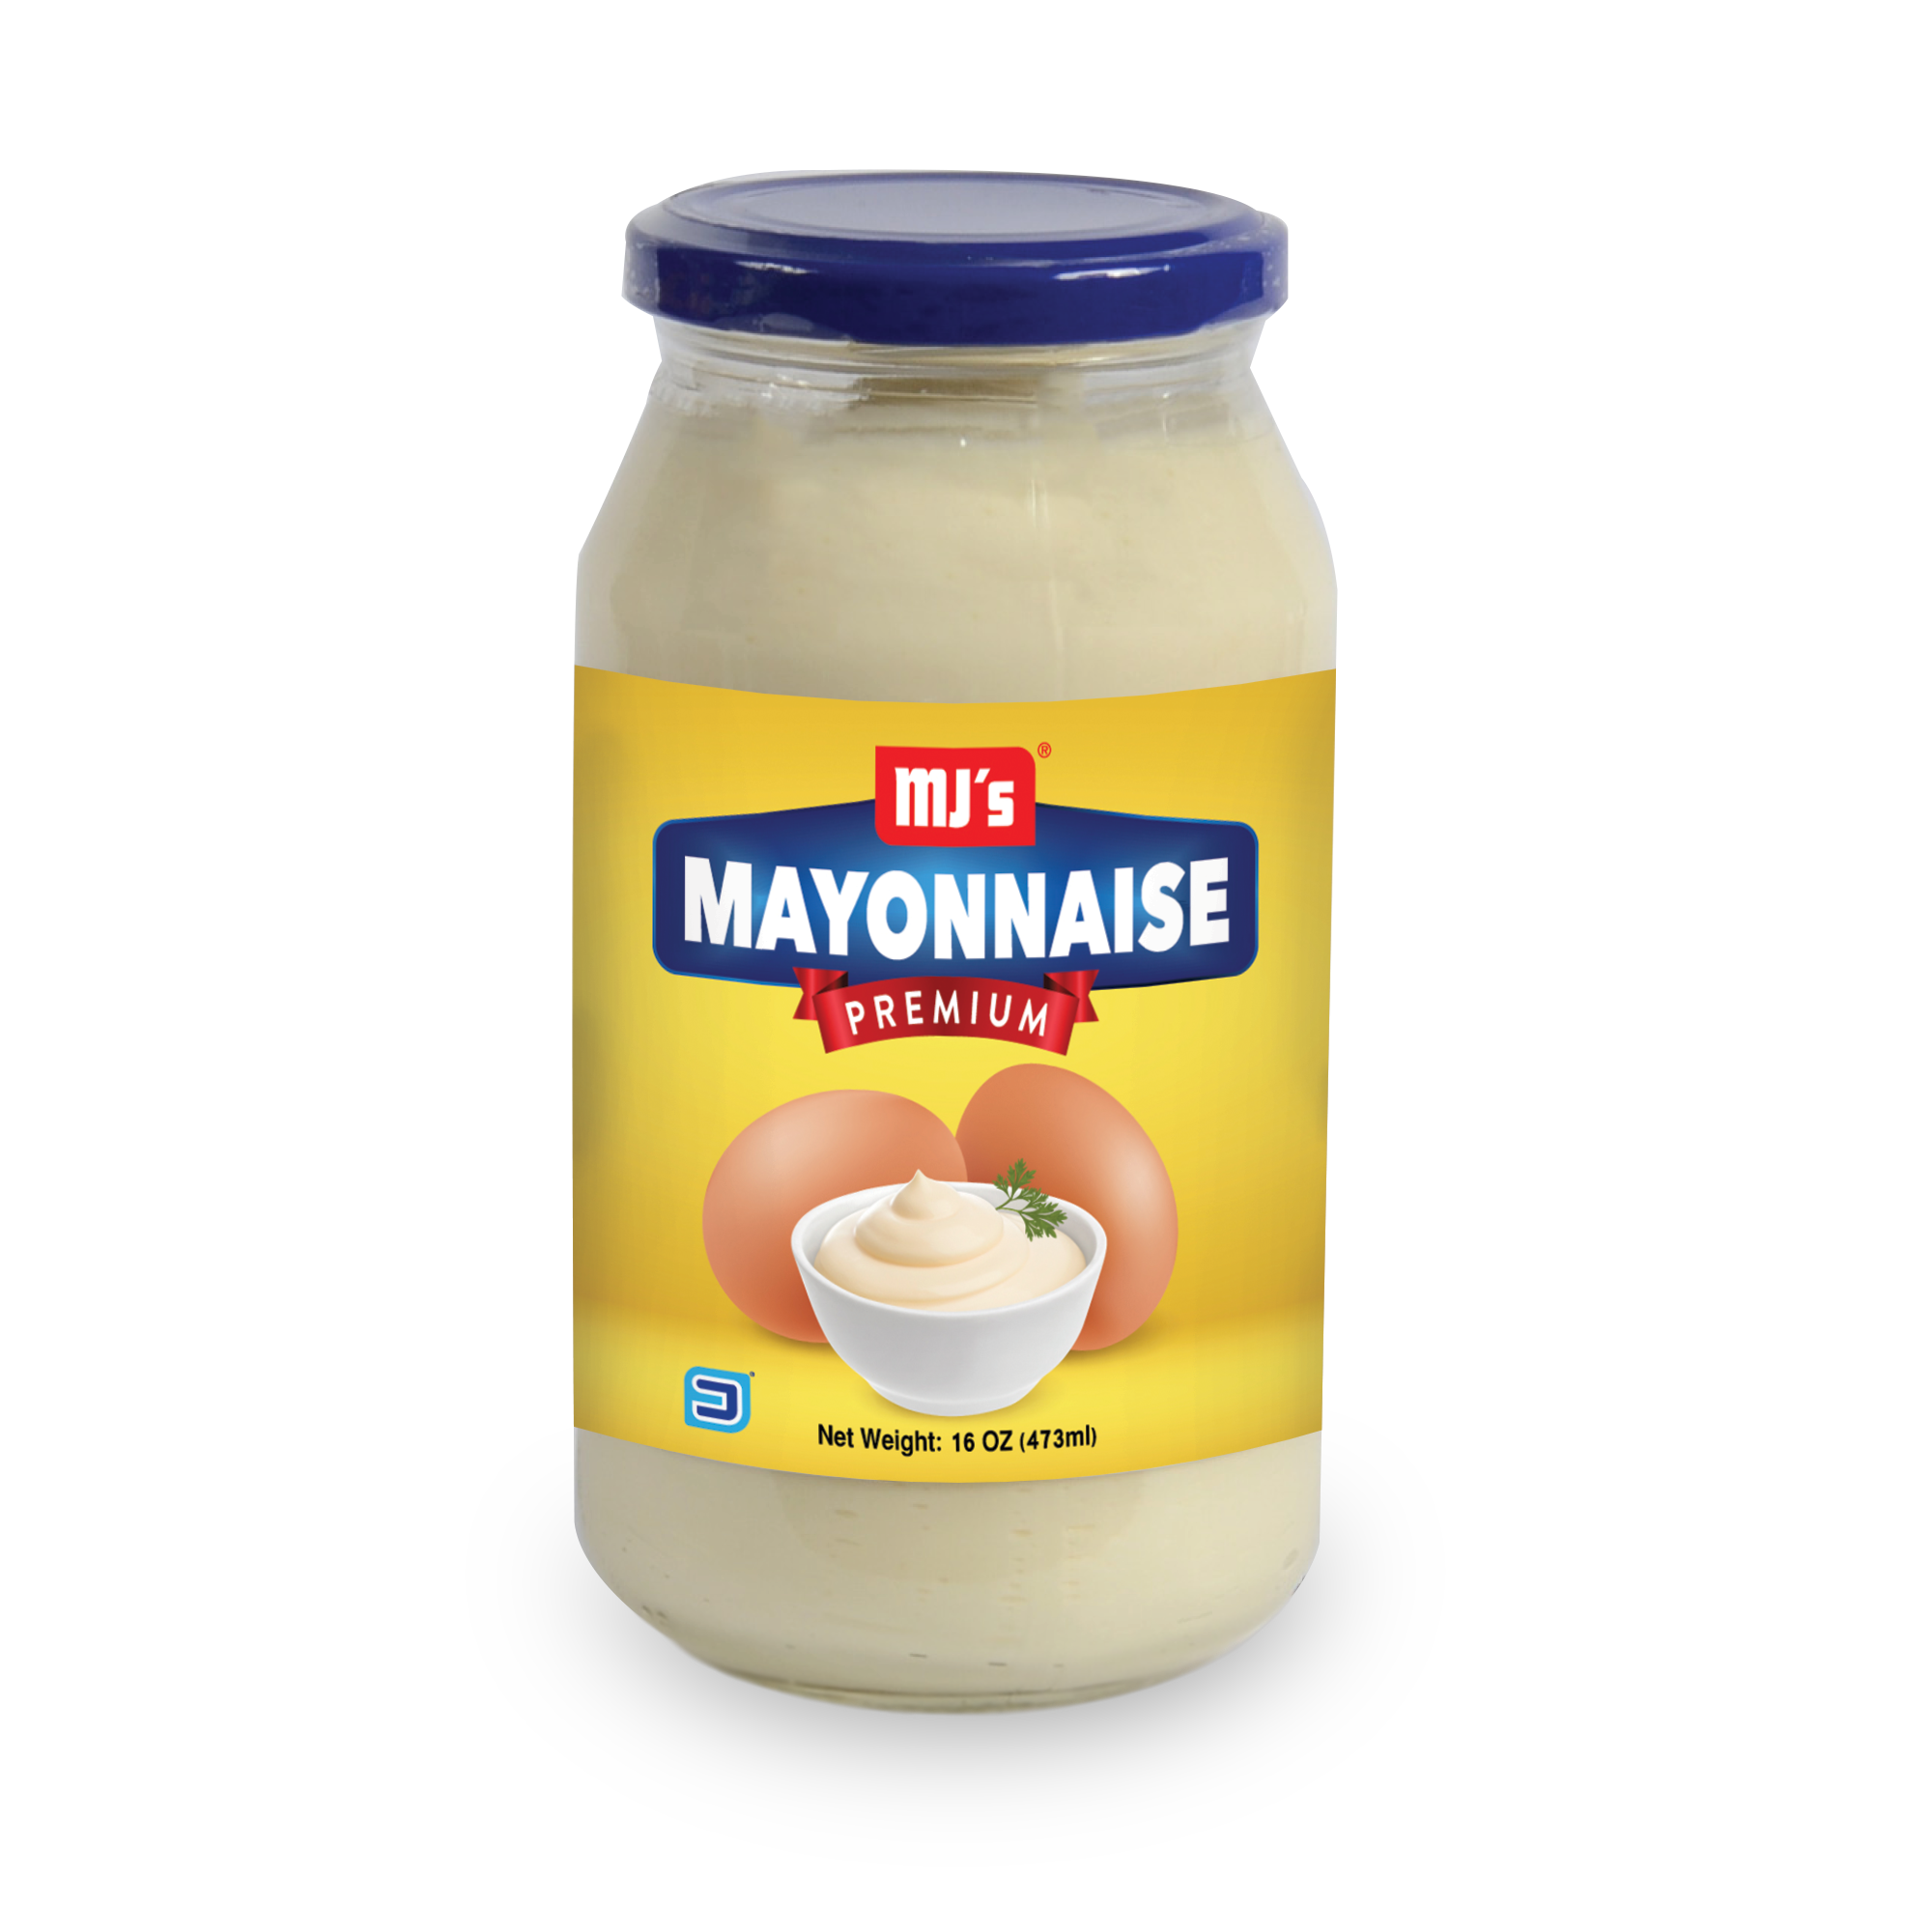 Mayonez